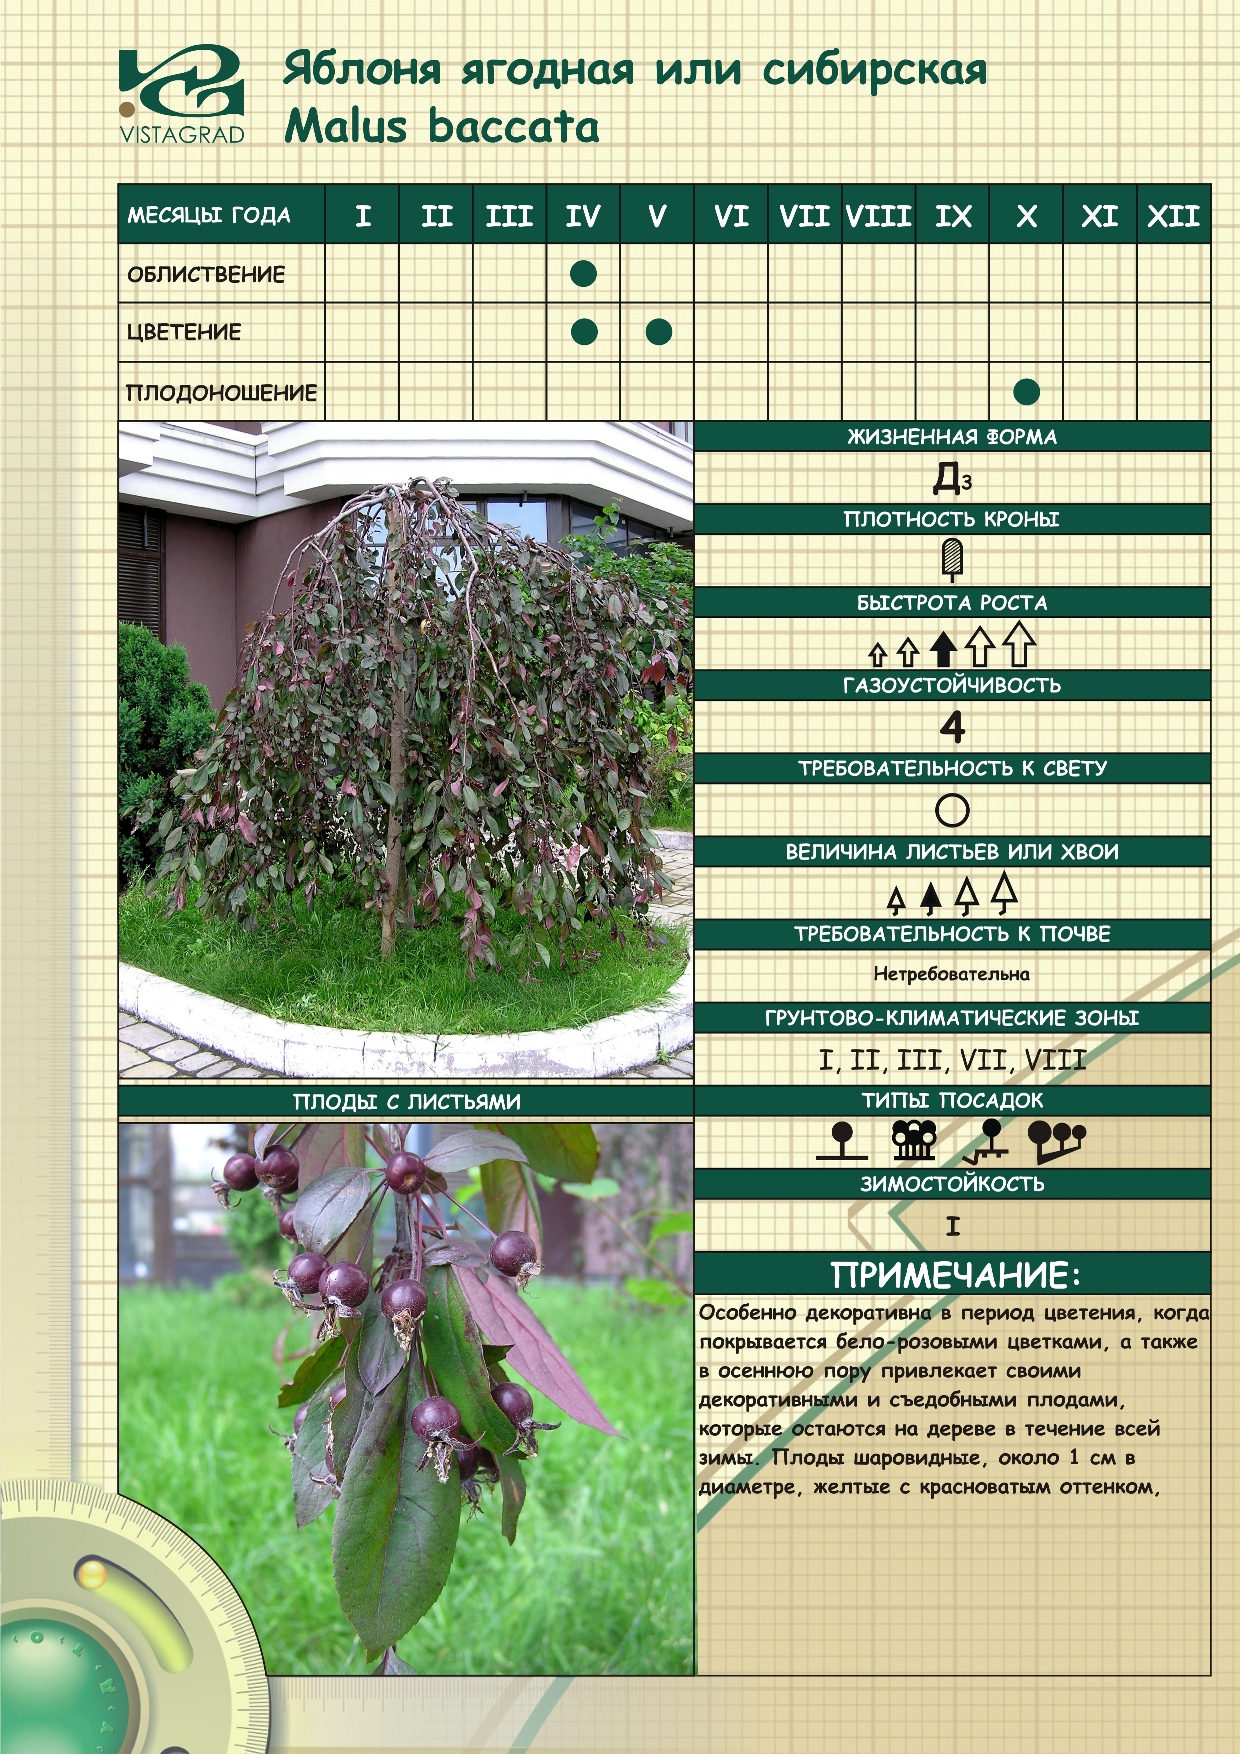 Яблоня недзвецкого: описание и характеристики, выращивание, высота и диаметр кроны